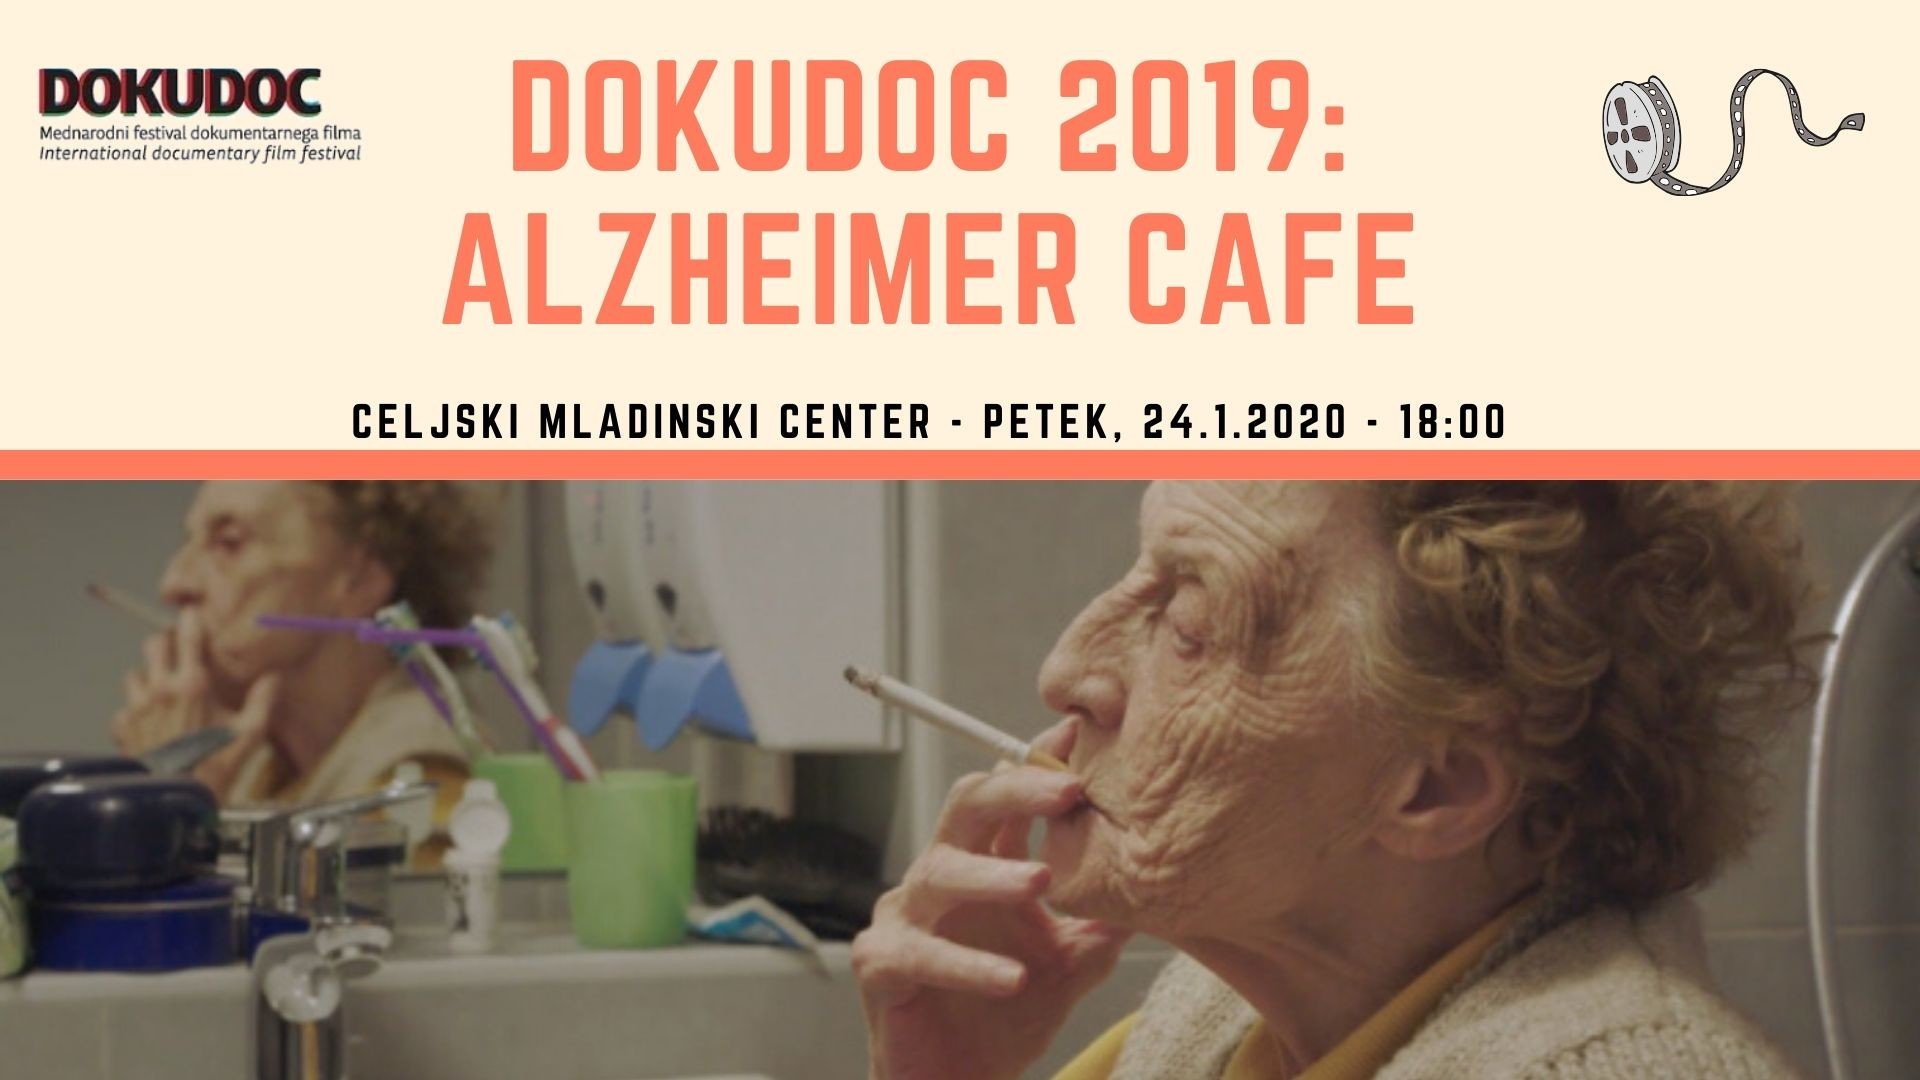 Dokudoc 2019: Alzheimer Cafe